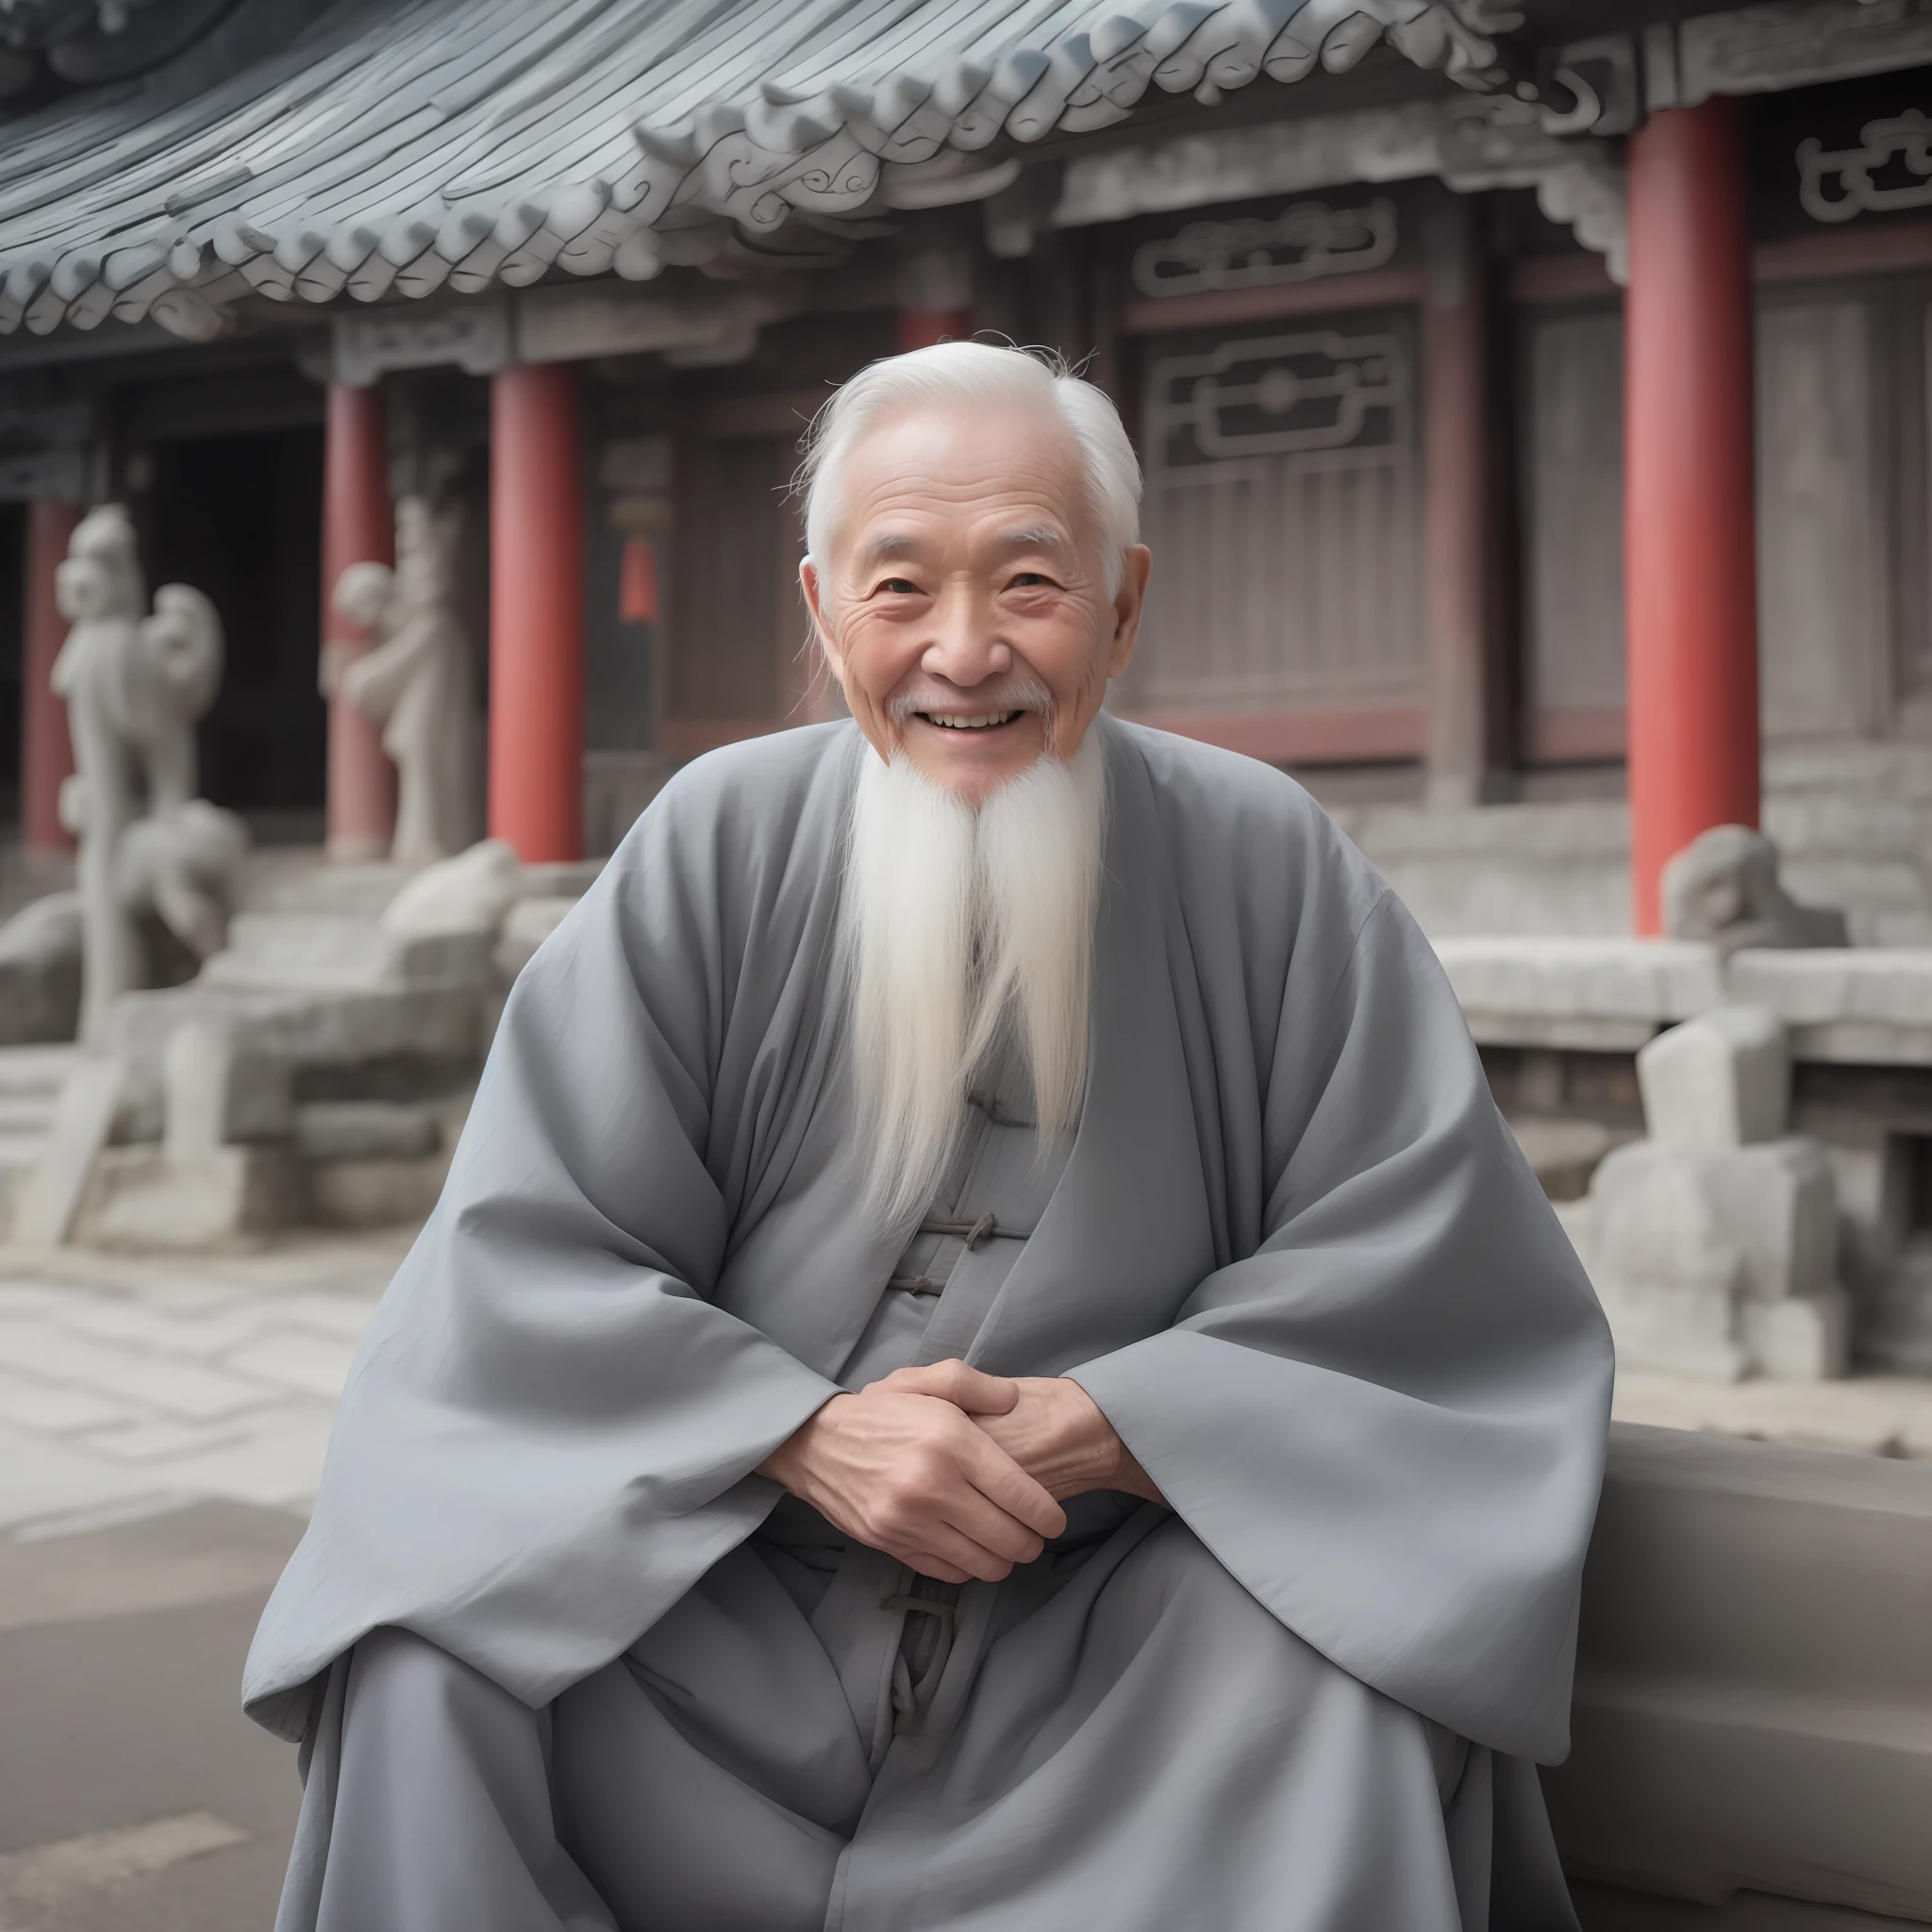 一個白髮老人, 身着灰色的中国古装, 微笑著, 80歲,镜头的中间,小白鬍子,古老的,
在室內, 中國道觀, 古老的 China temple,盤腿而坐,古老的 Chinese architecture,
中景, 最好的品質,照片,